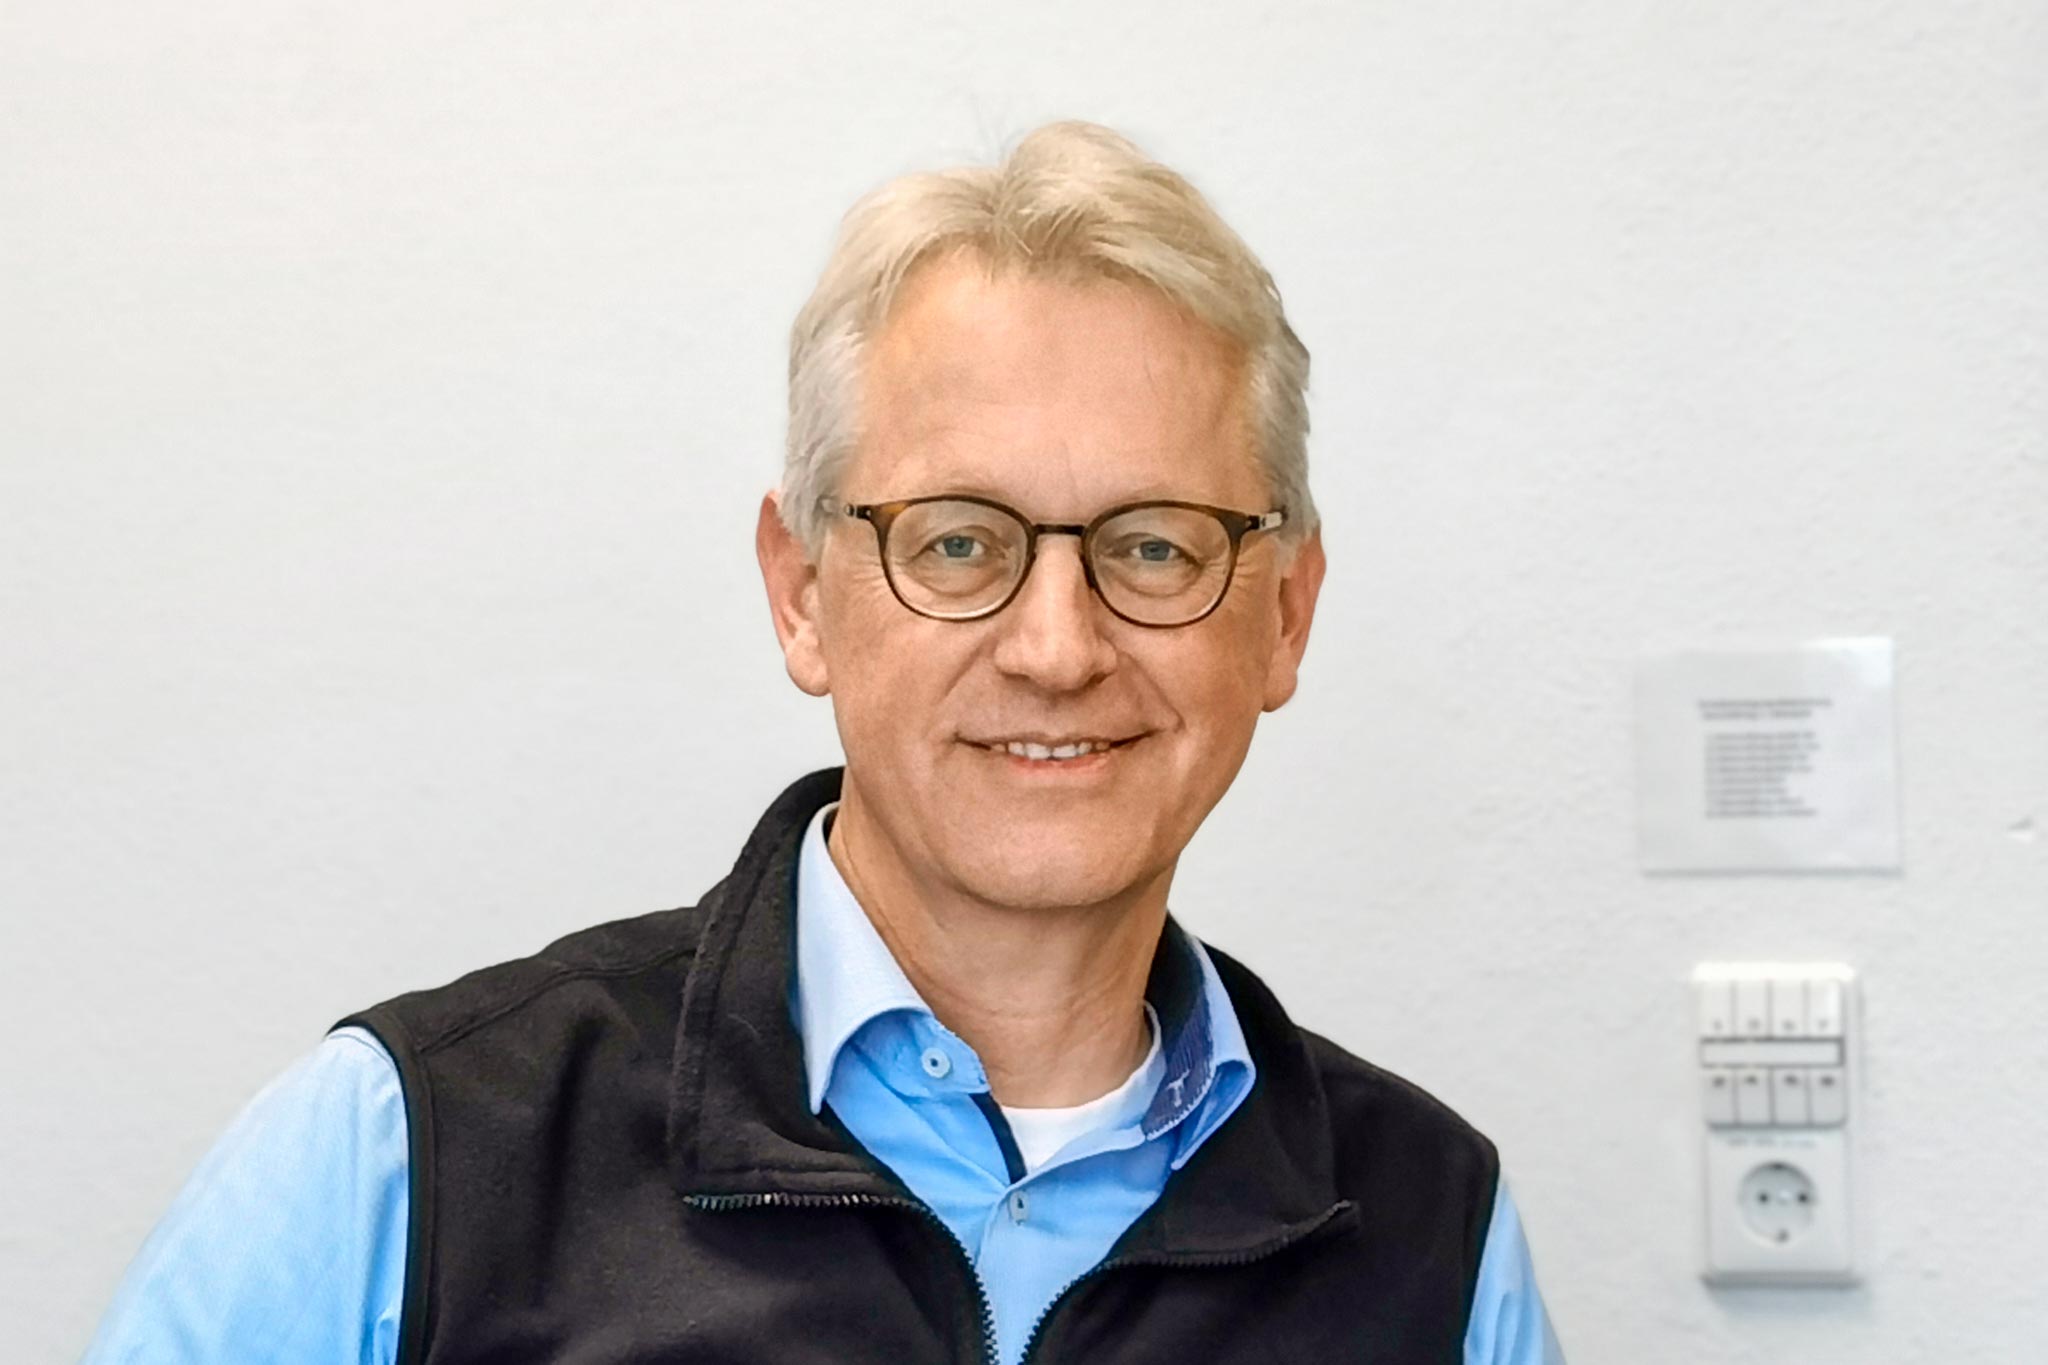 Dr. Alexander Ludwig, Managing Partner at AMT Schmid GmbH & Co. KG.